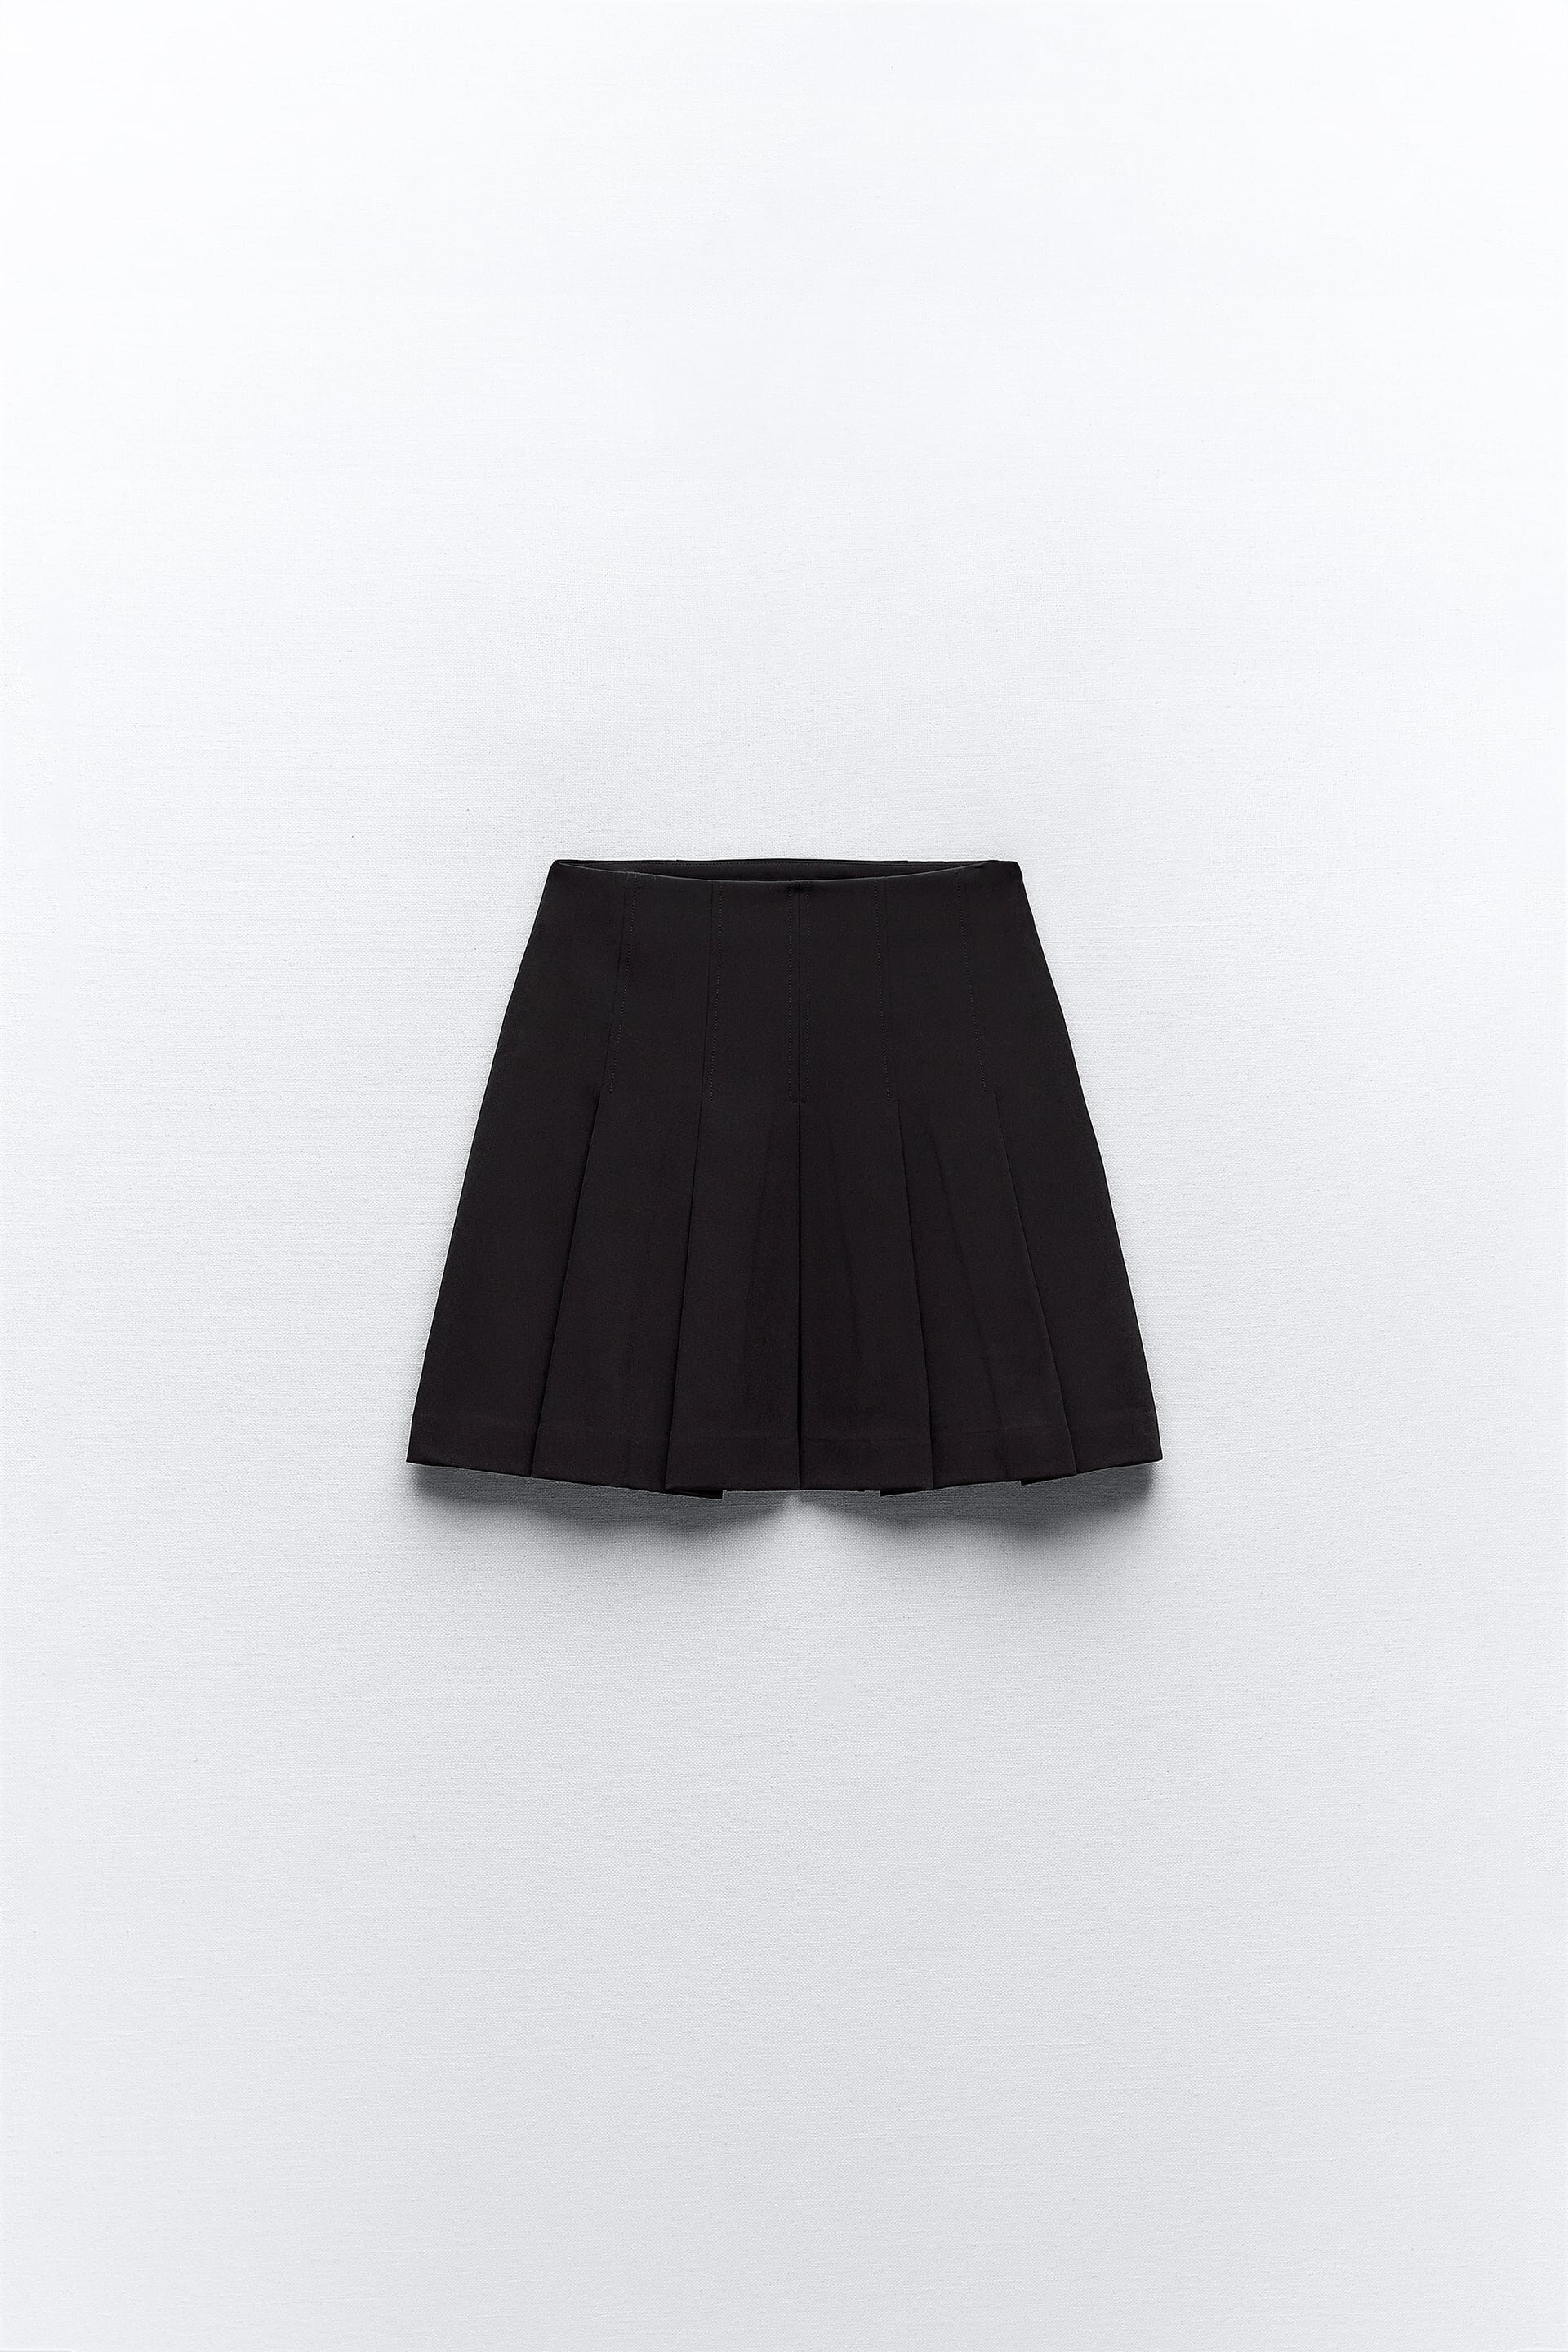 Minifalda negra de tablas estilo colegiala: 25,95€ | Foto: Zara